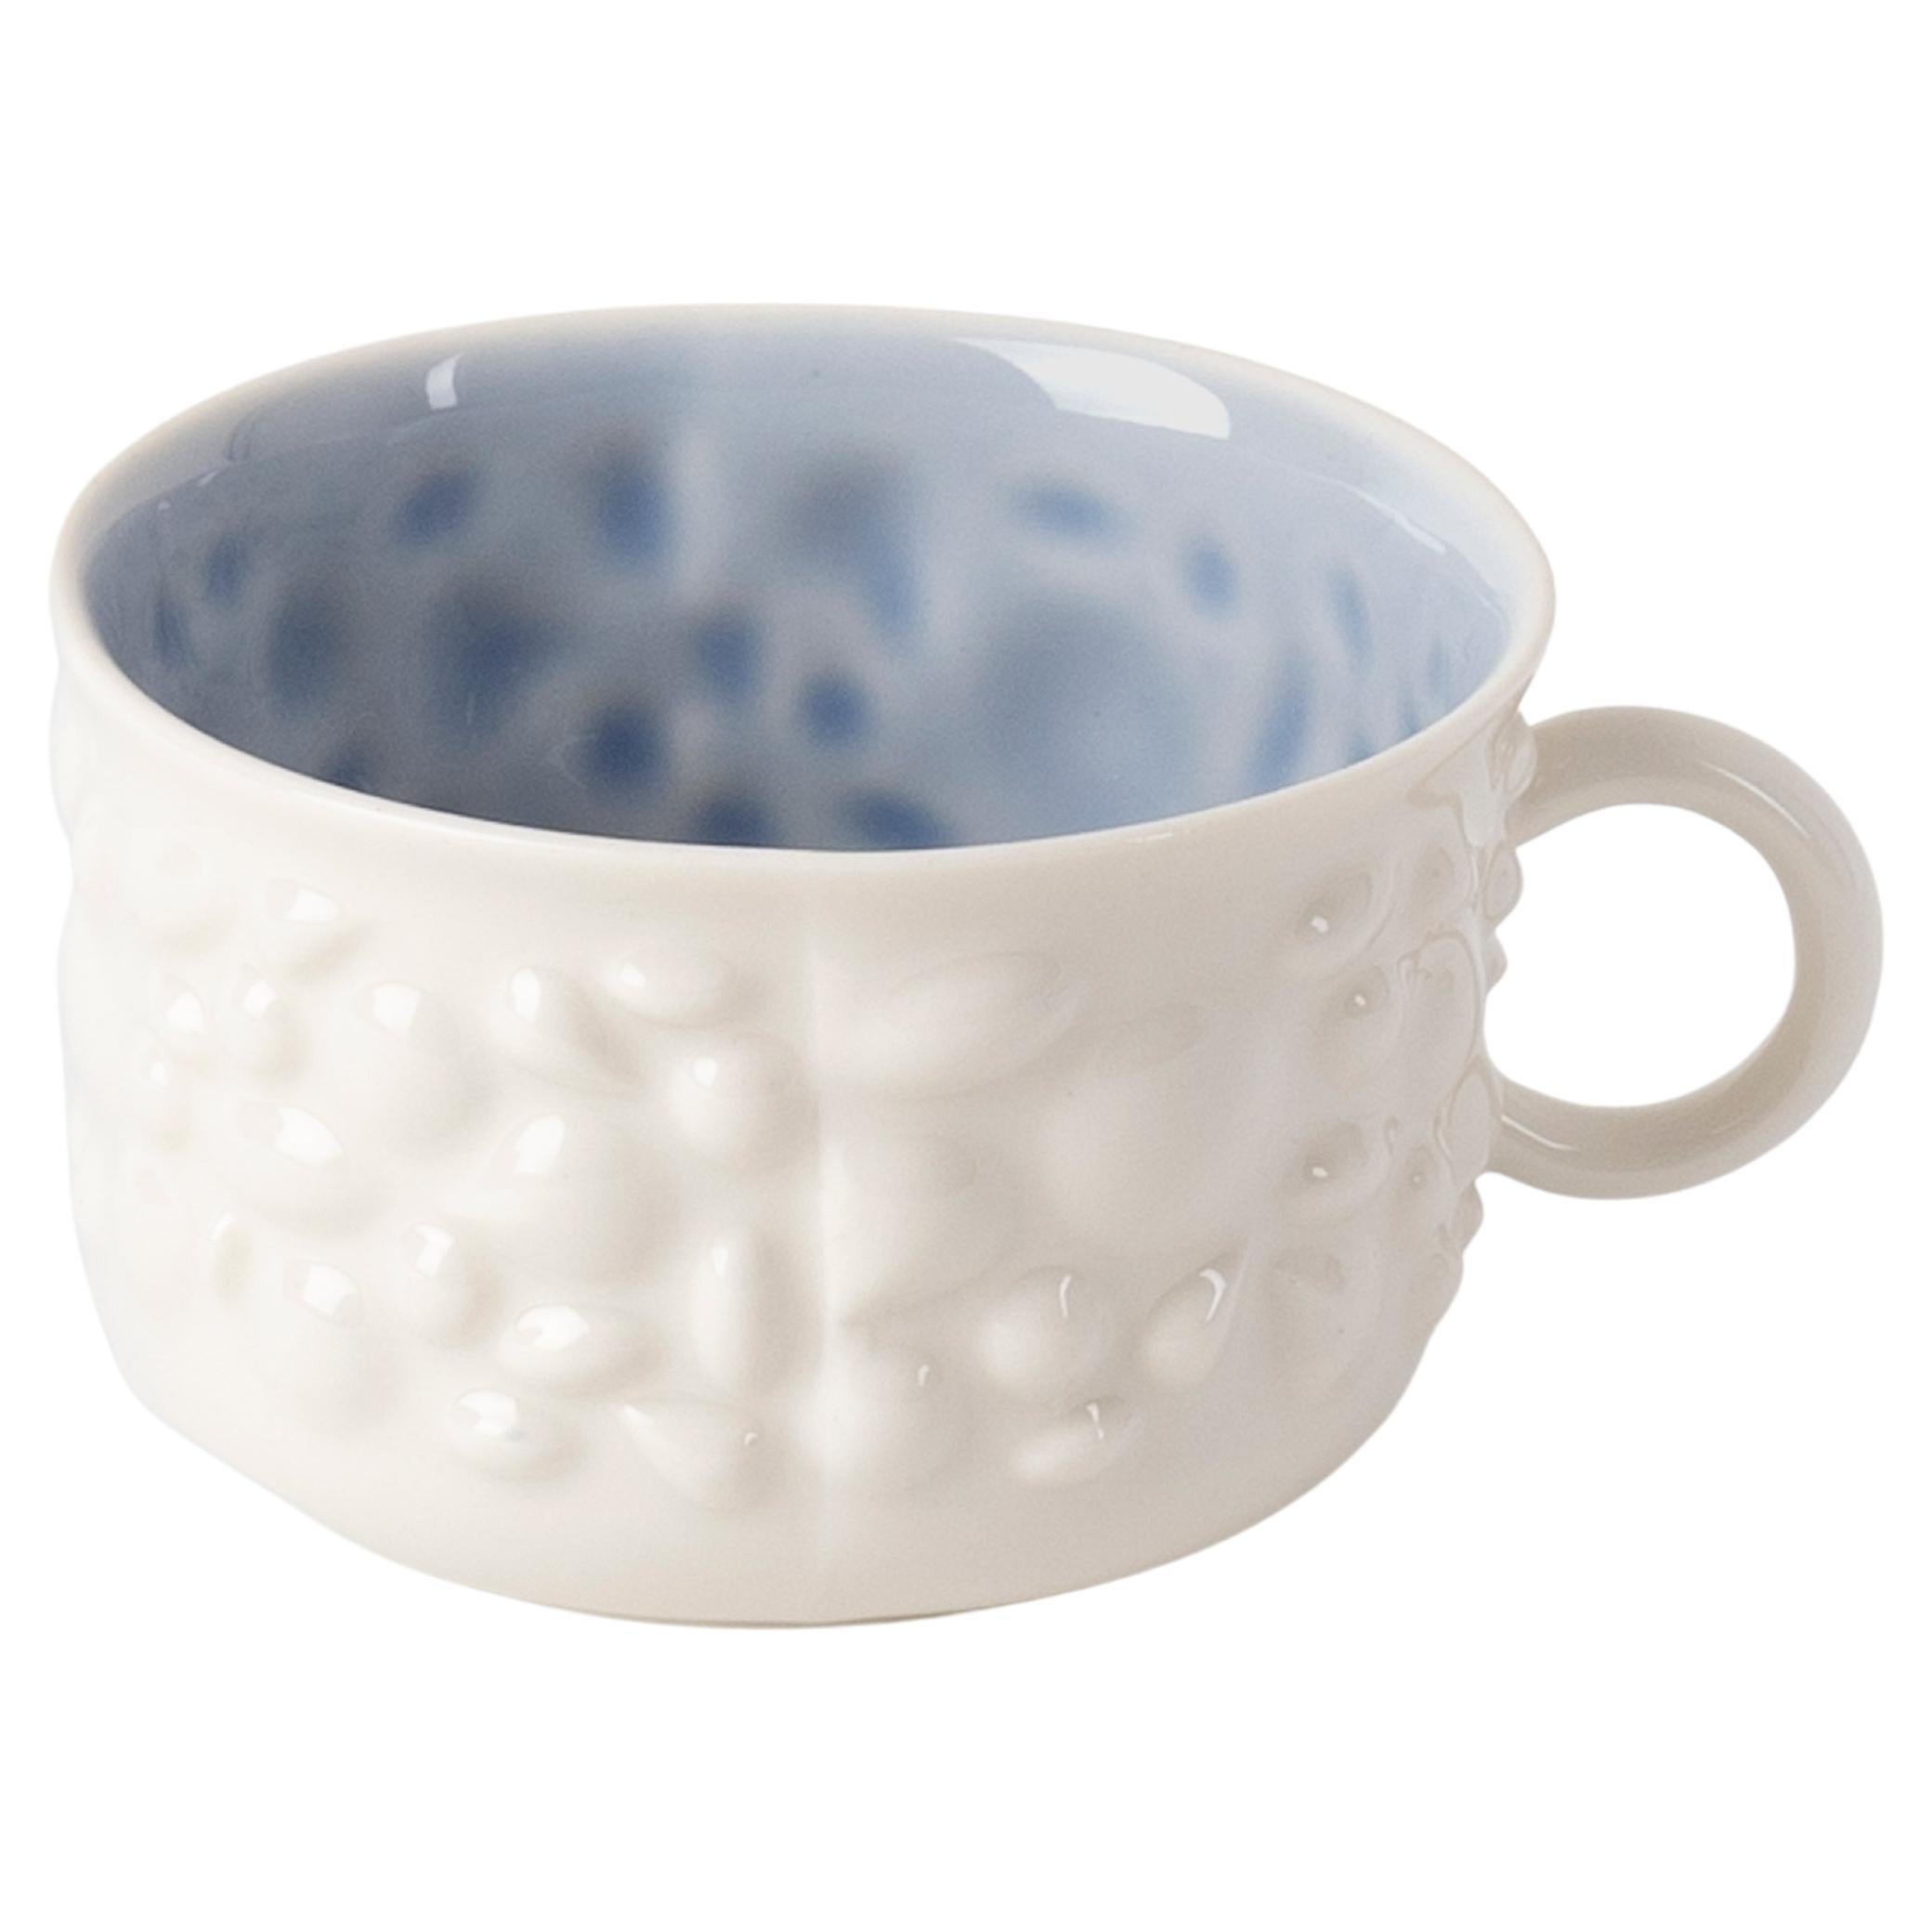 Tasse à café contemporaine moderne en porcelaine Justine avec poignée, blanc et bleu